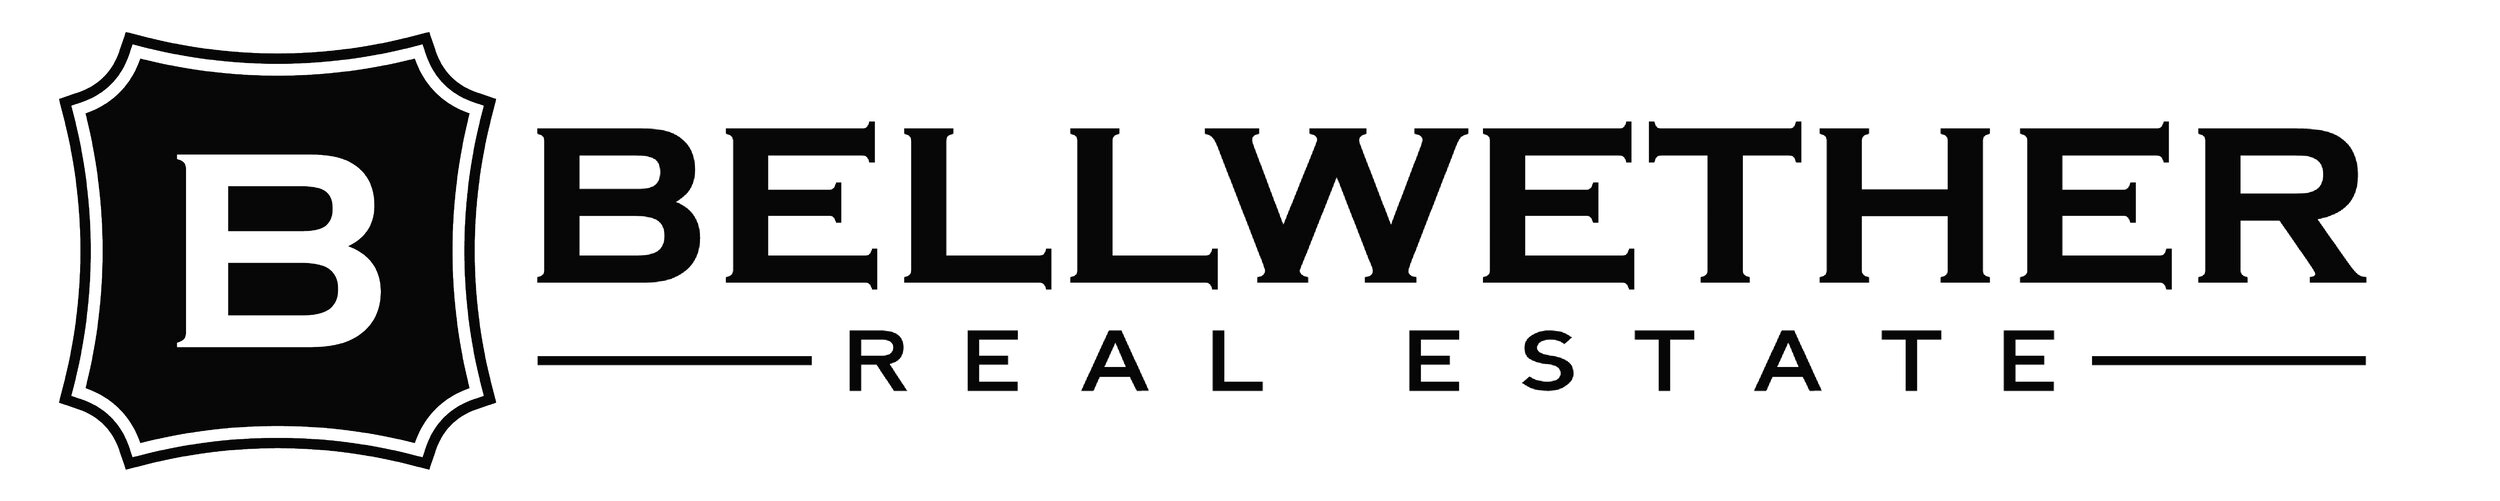 MGC bellweather logo.jpg